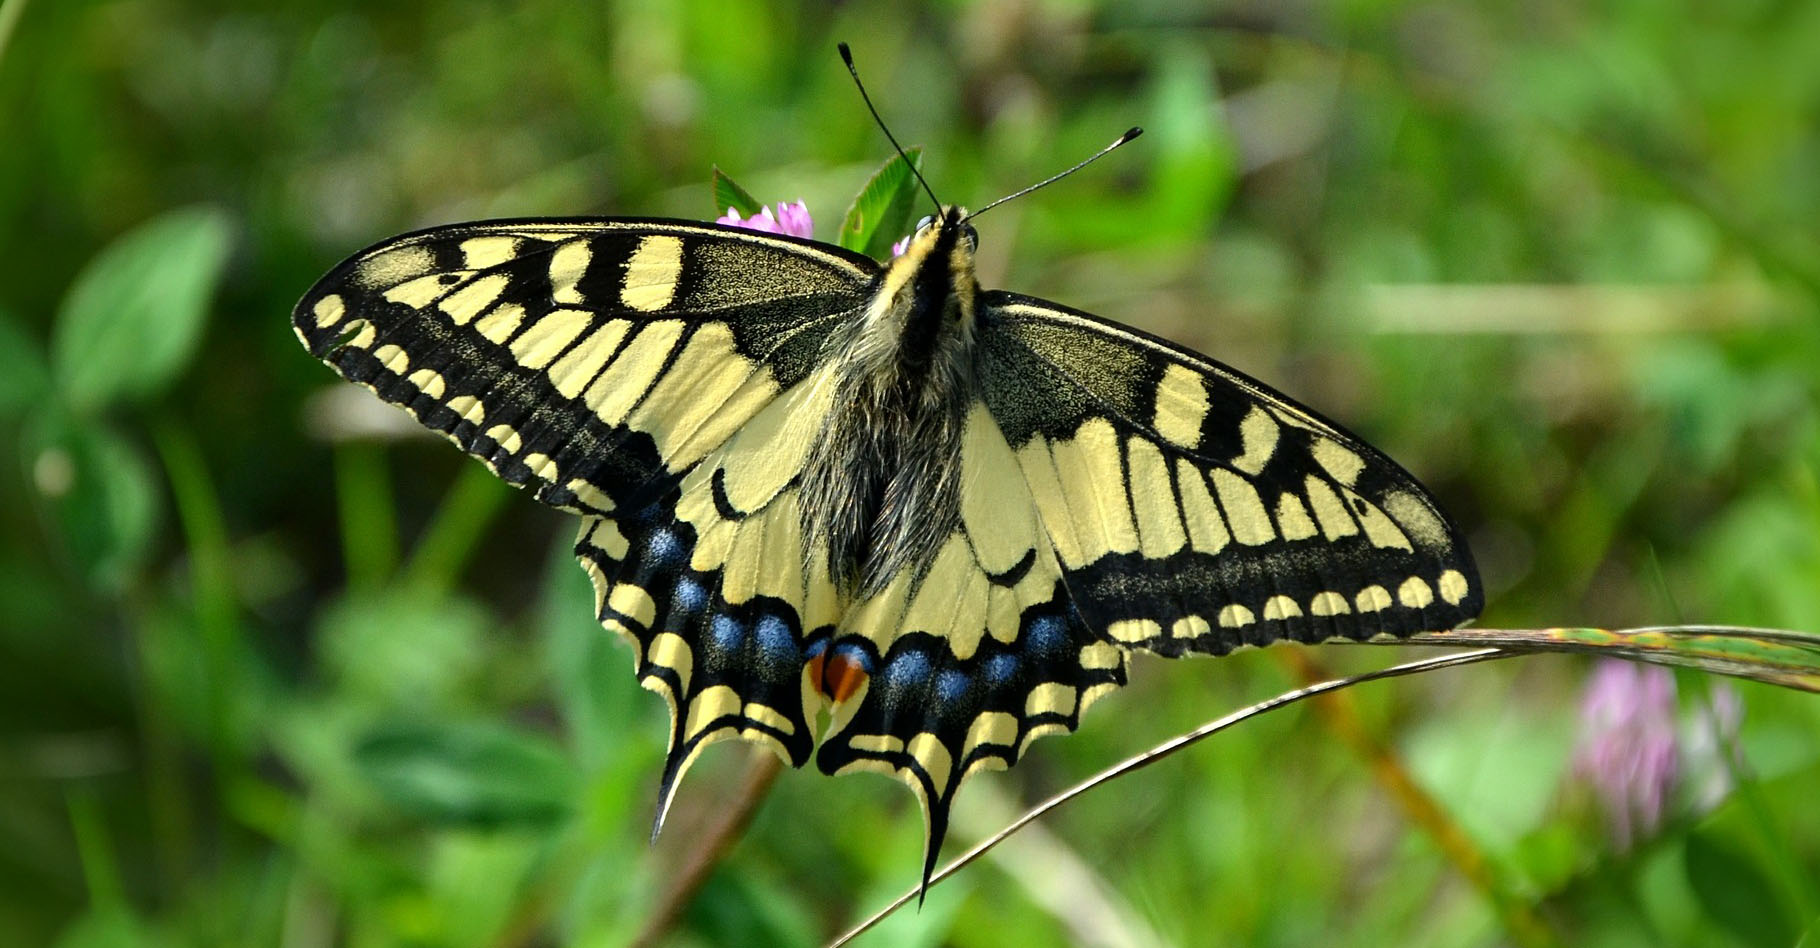 En Europe, le Machaon est un des papillons les plus courants. La couleur jaune et les dessins noirs de ses magnifiques ailes le rendent facilement reconnaissable dans les jardins. Pourtant, il ne les utilise que très peu, préférant planer en se laissant porter par le vent. © Congerdesign, Pixabay, DP